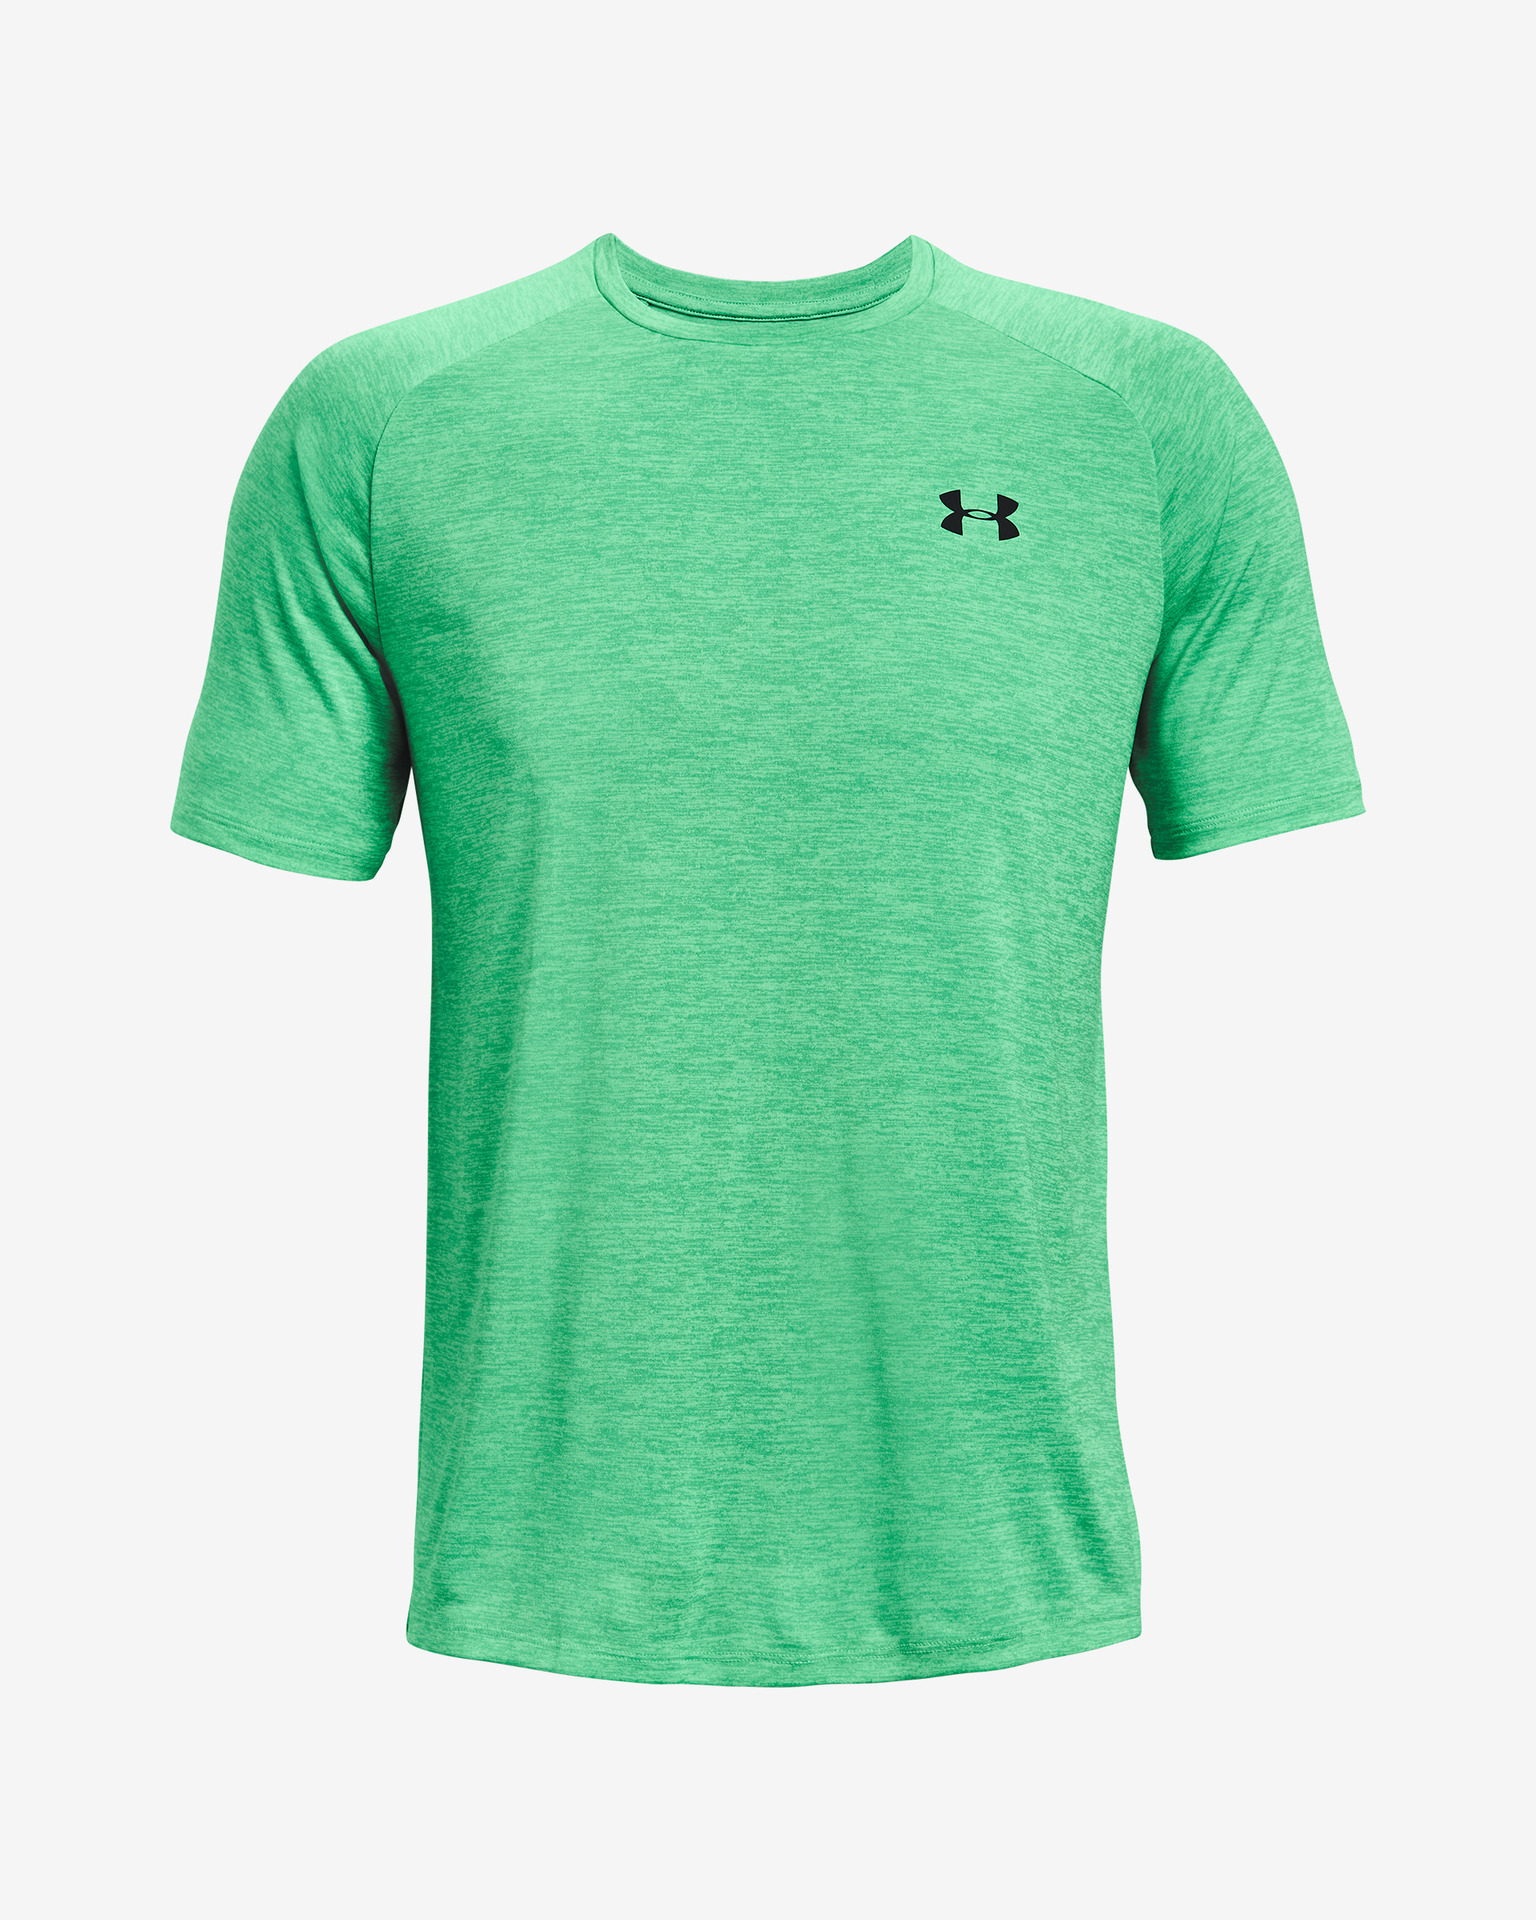 Under Armour Men's Tech 2.0 Short Sleeve Shirt, Green, Size: Xs